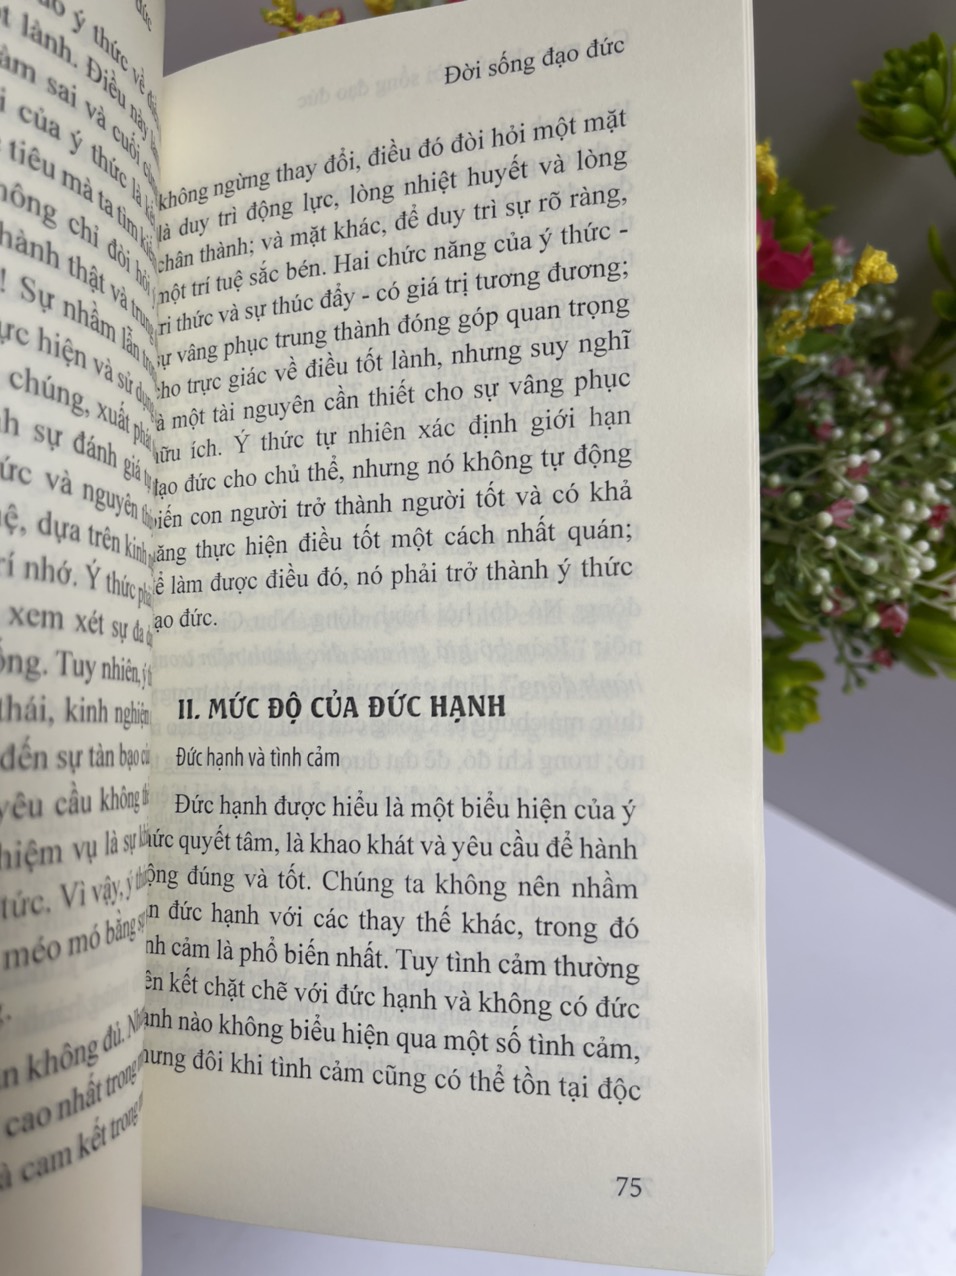 CÁC MỨC ĐỘ CỦA ĐỜI SỐNG ĐẠO ĐỨC – Ivan Gobry – dịch giả Nguyễn Thị Hồng Nhung – Trường Phương Books